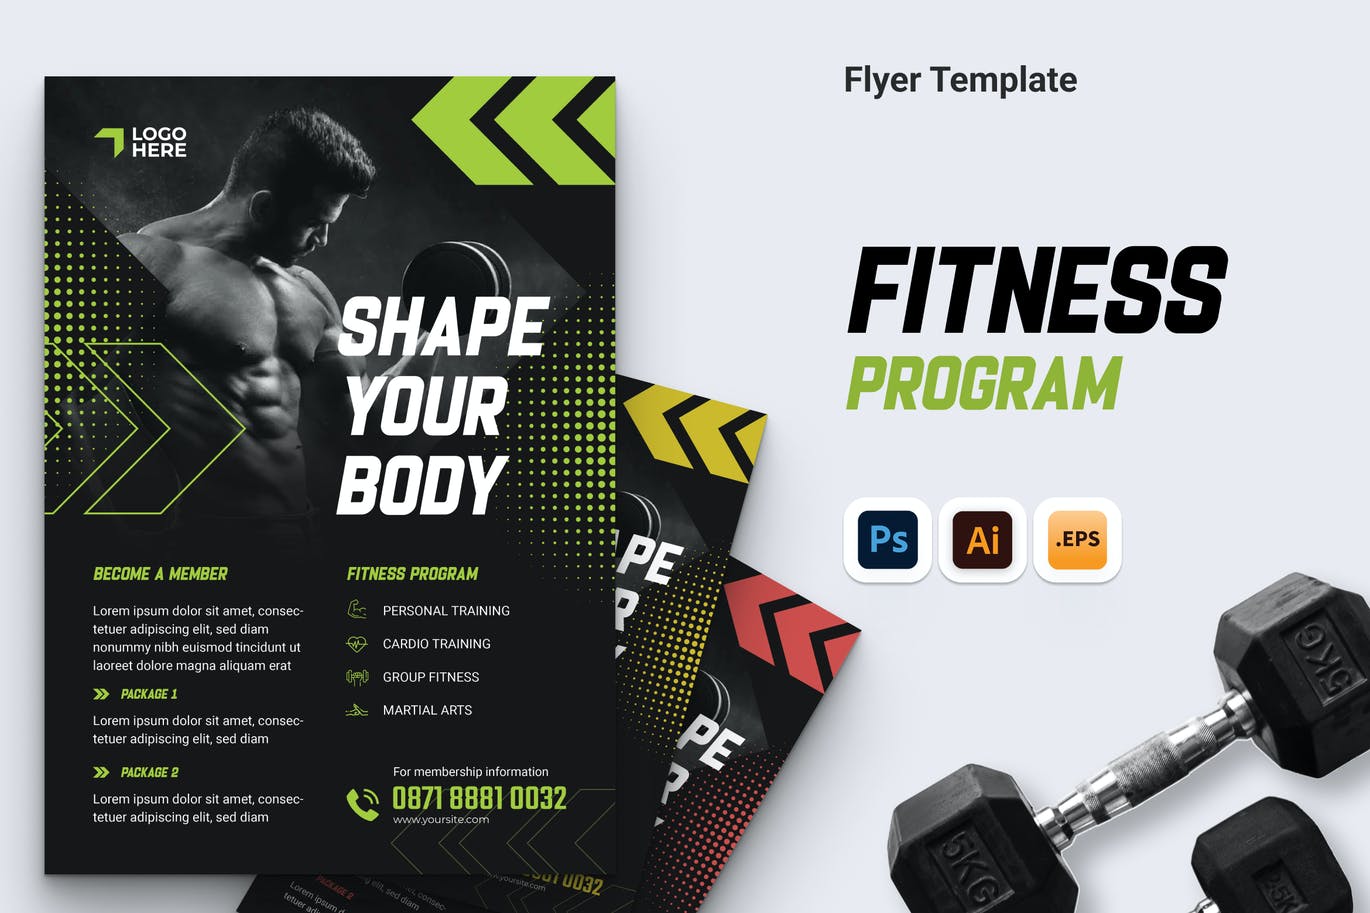 健身计划传单设计模板 Fitness Program Flyer Ai, PSD, & EPS Template 设计素材 第1张